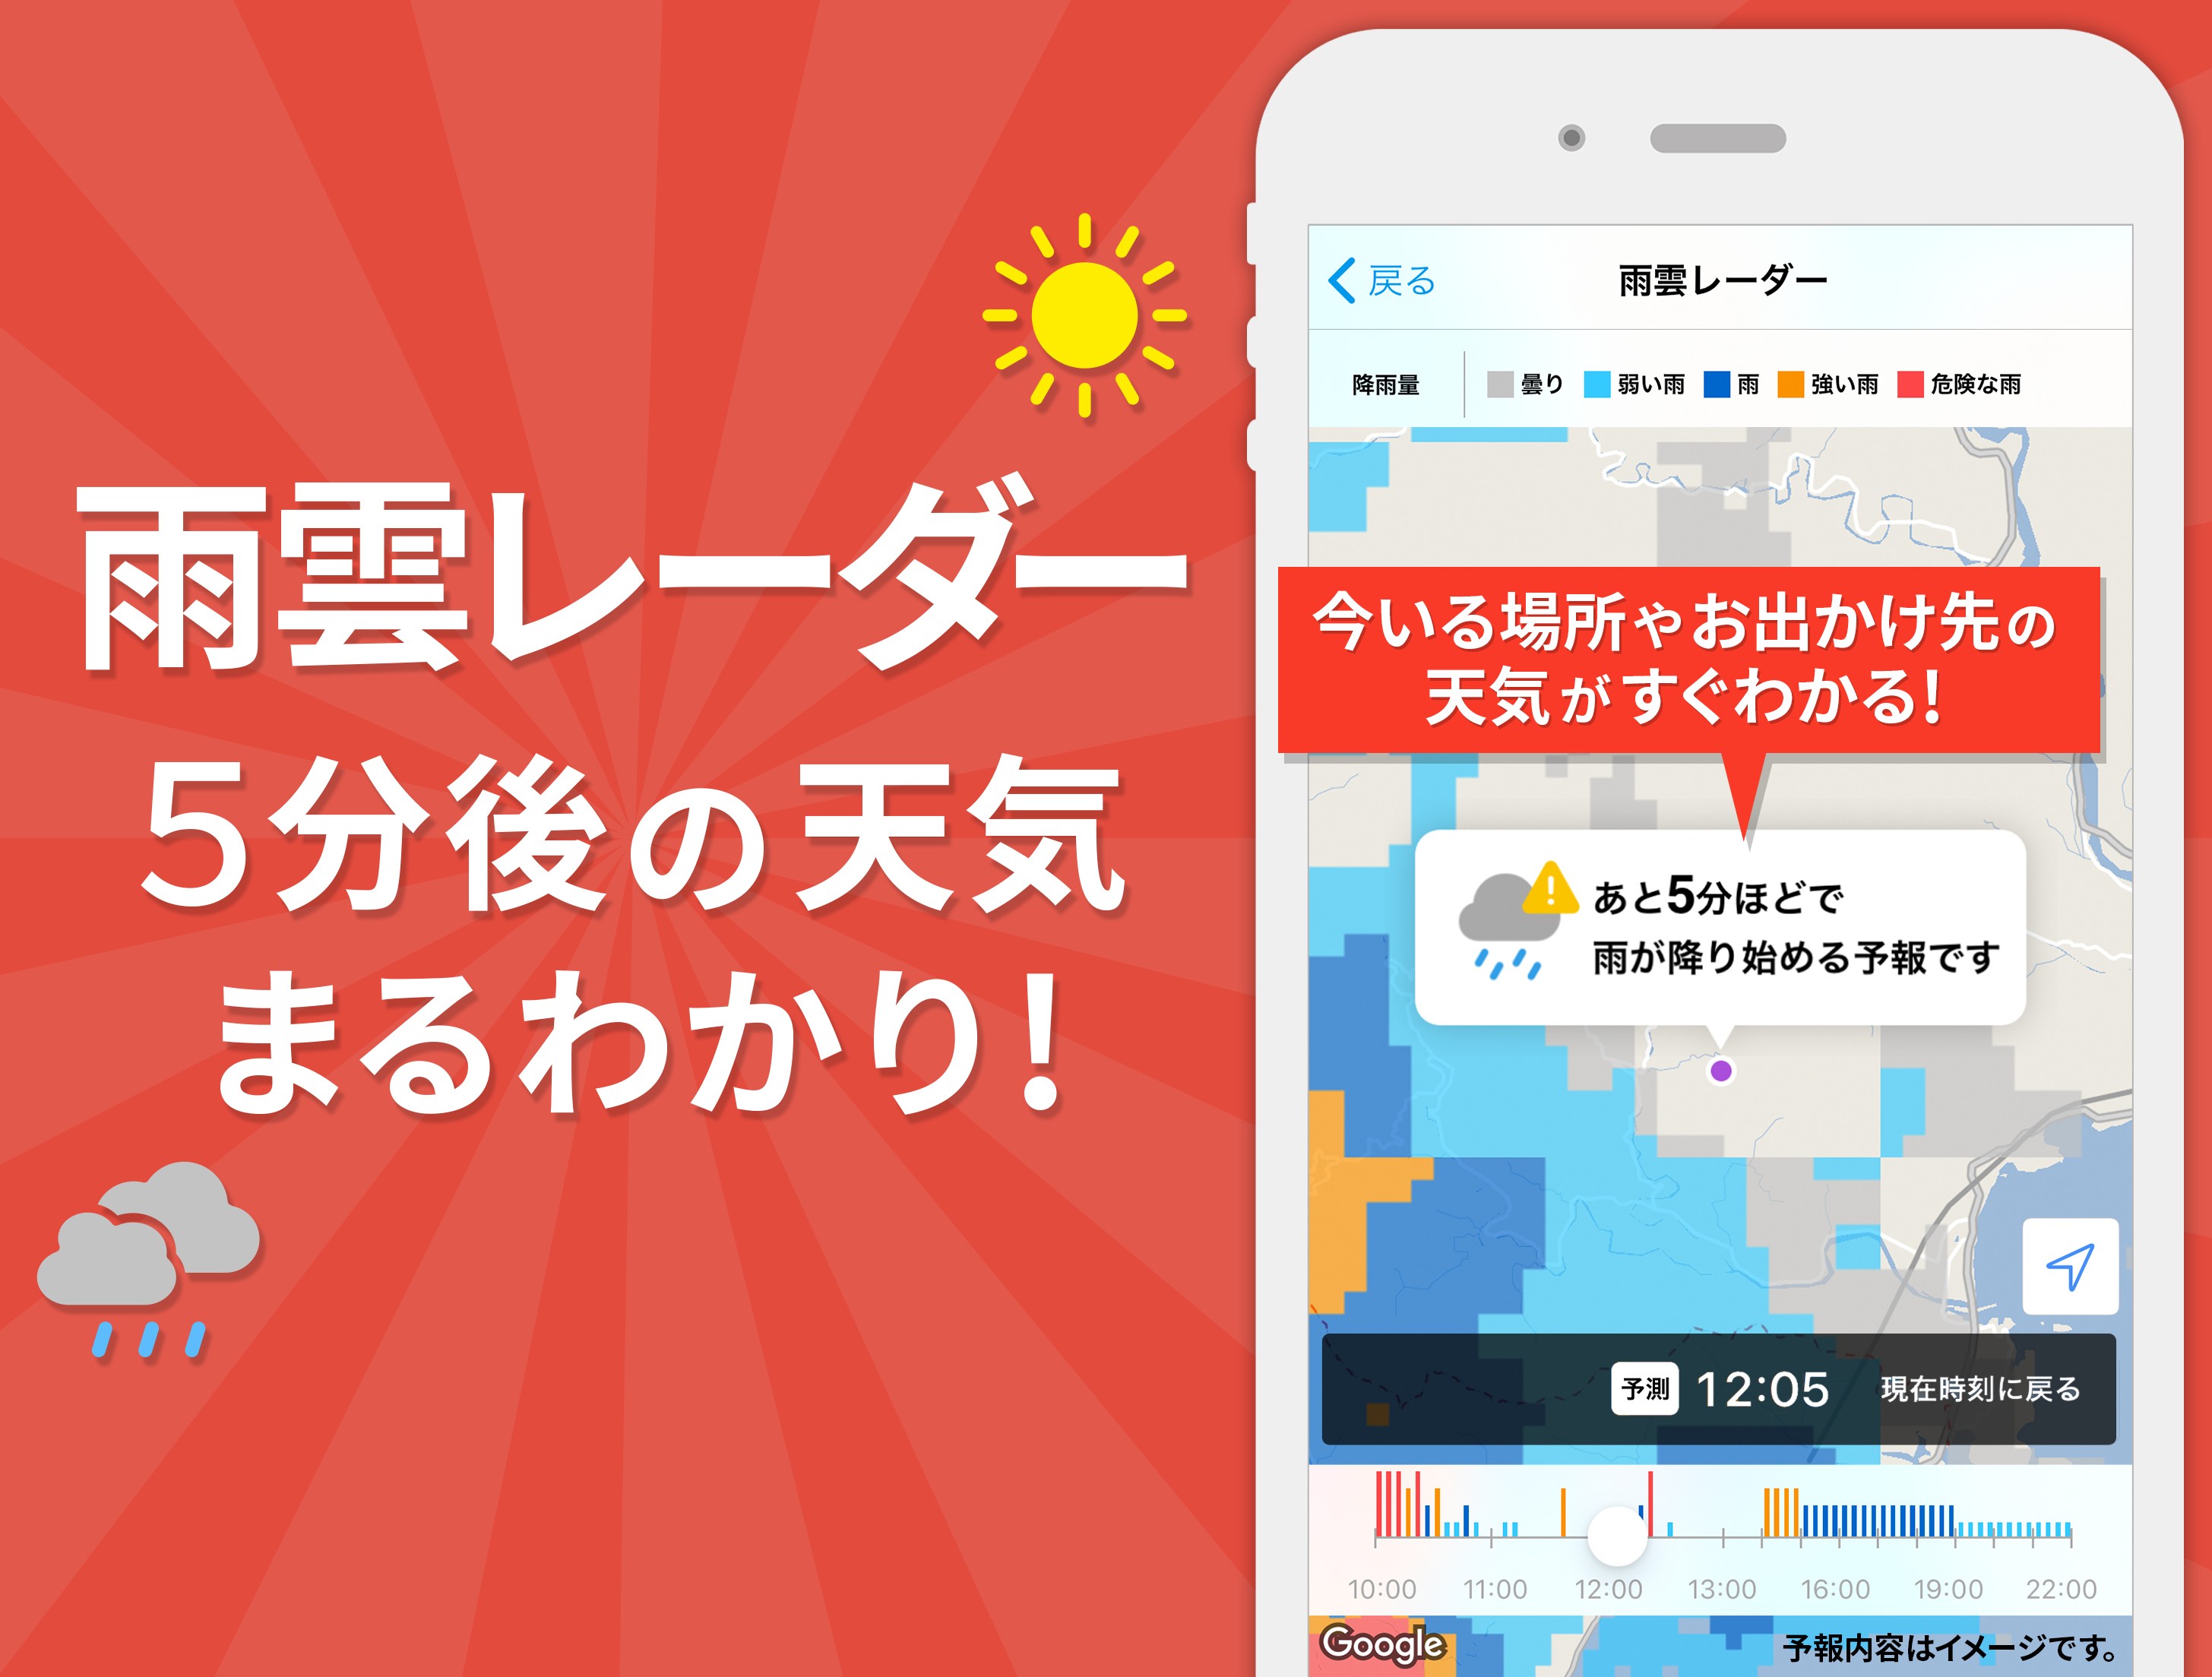 アニメの壁紙アプリの最新おすすめ人気ランキング15選 Iphone Androidスマホアプリ ドットアップス Apps